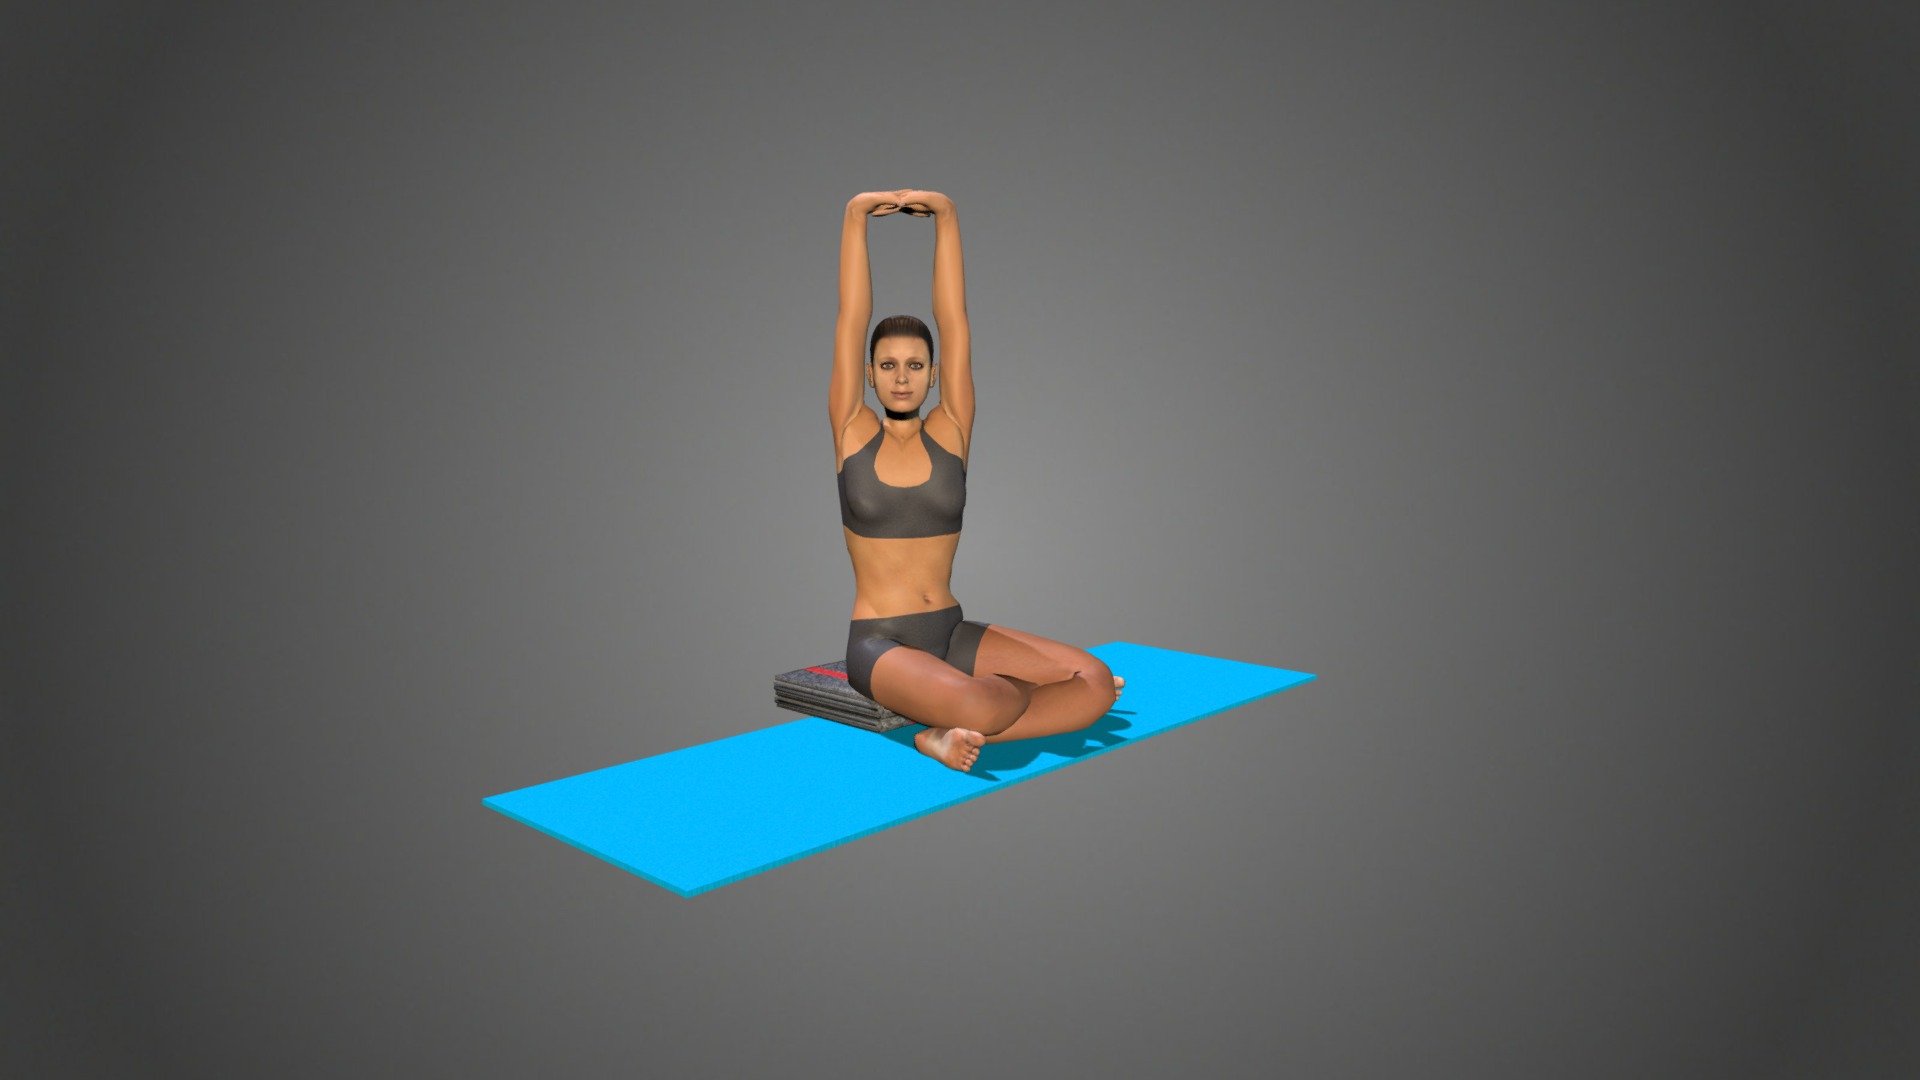 Bodhi School of Yoga - Sukhasana (Easy Yoga Pose)! #yogachallenge #workout  #takecareofyourself #yogapose #positivevibes | Facebook